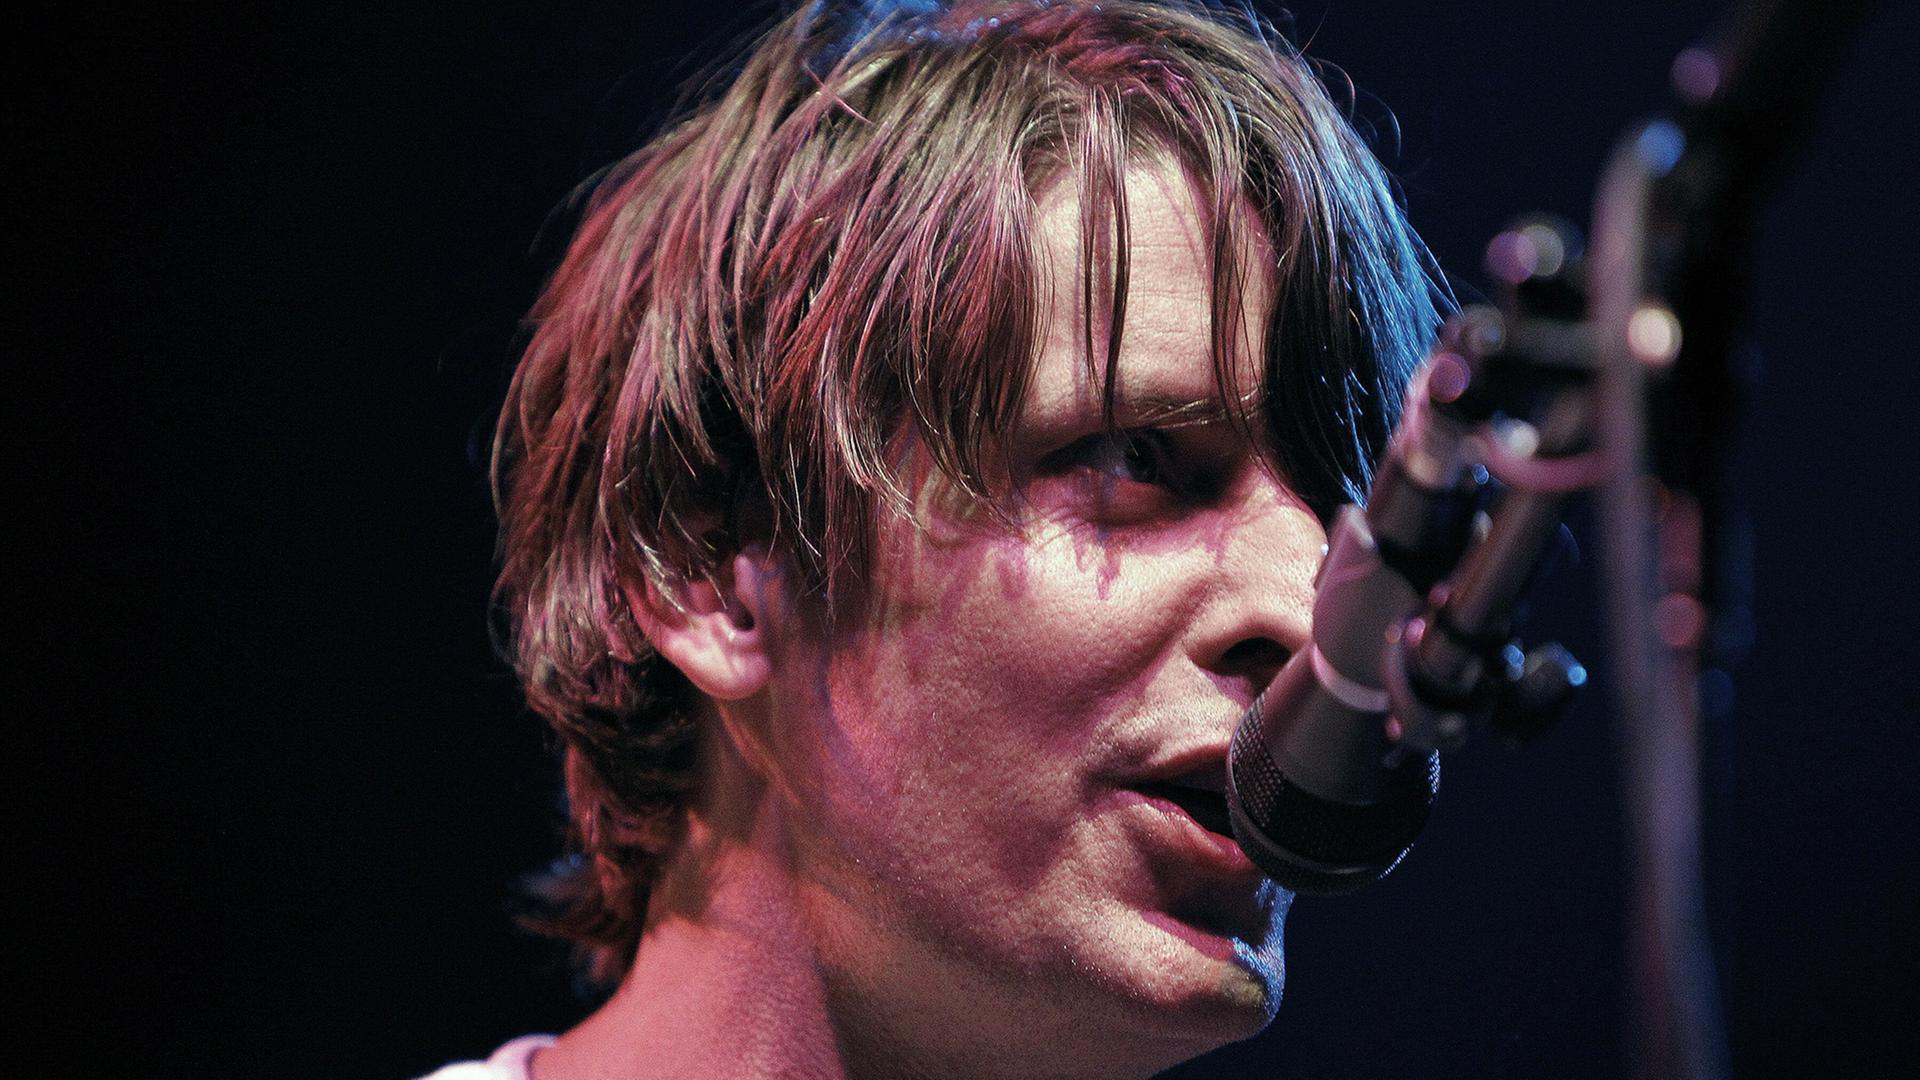 Sänger Stephen Malkmus, hier aufgenommen bei einem Pavement-Konzert im Roy Wilkins Auditorium im Jahr 2010